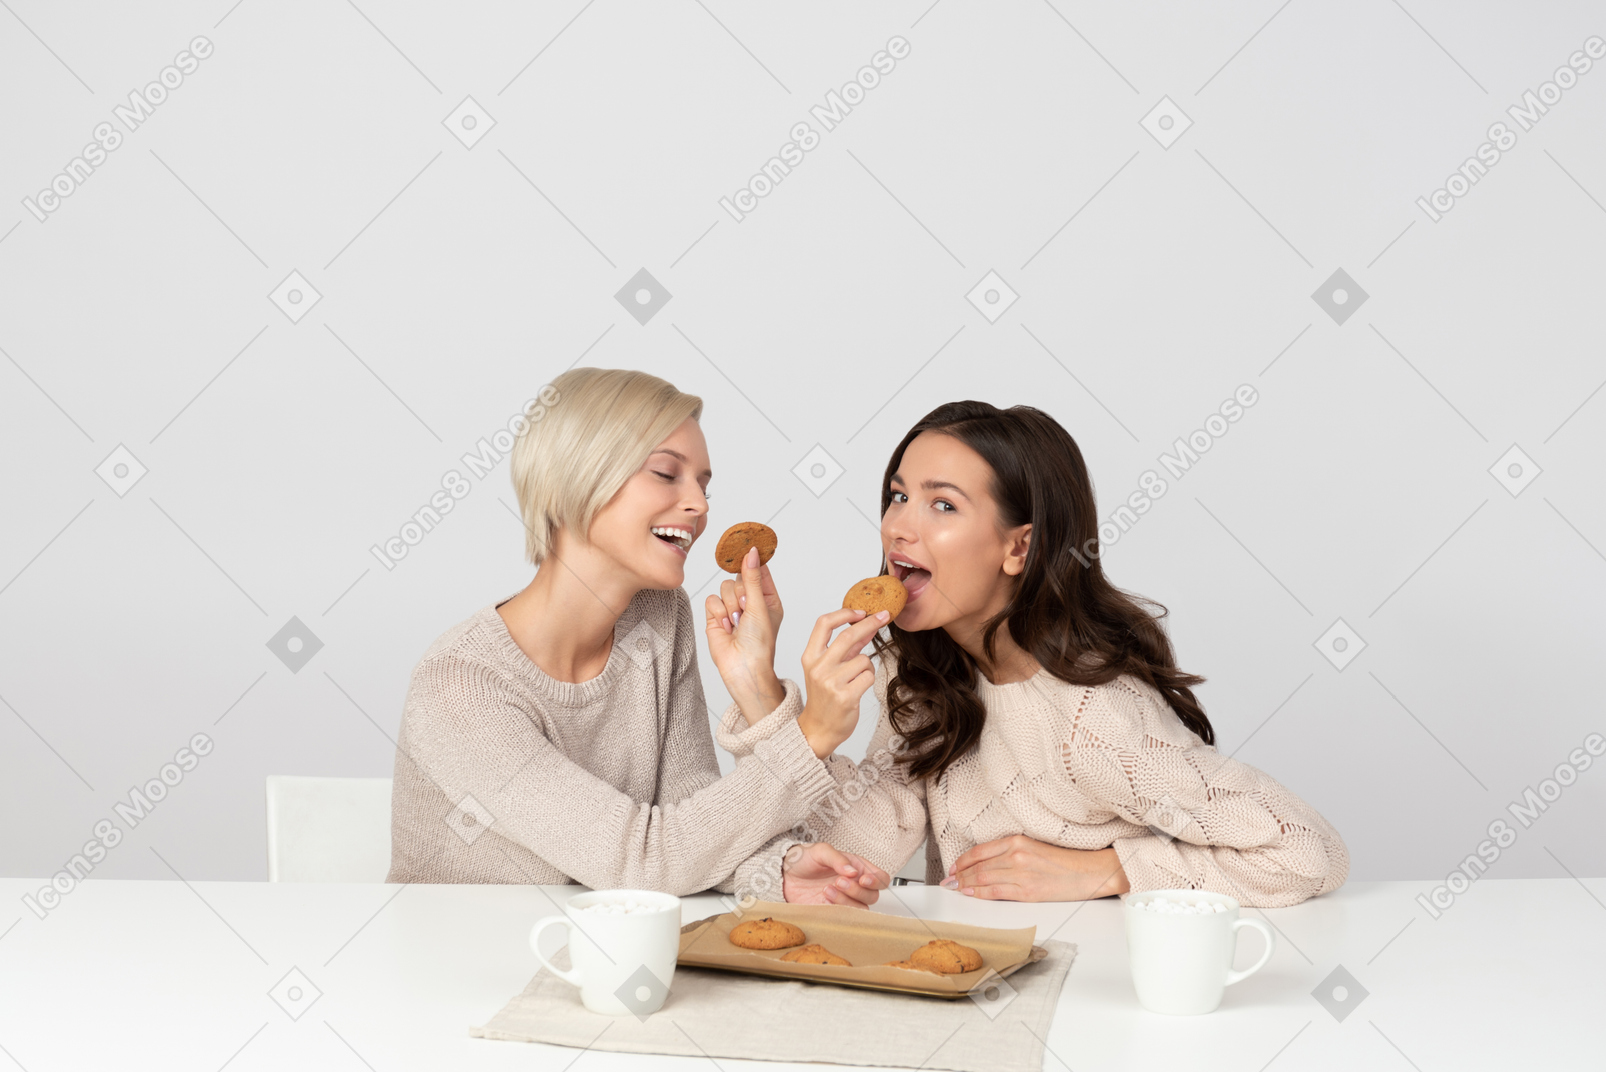 Mujeres jóvenes alimentándose con galletas